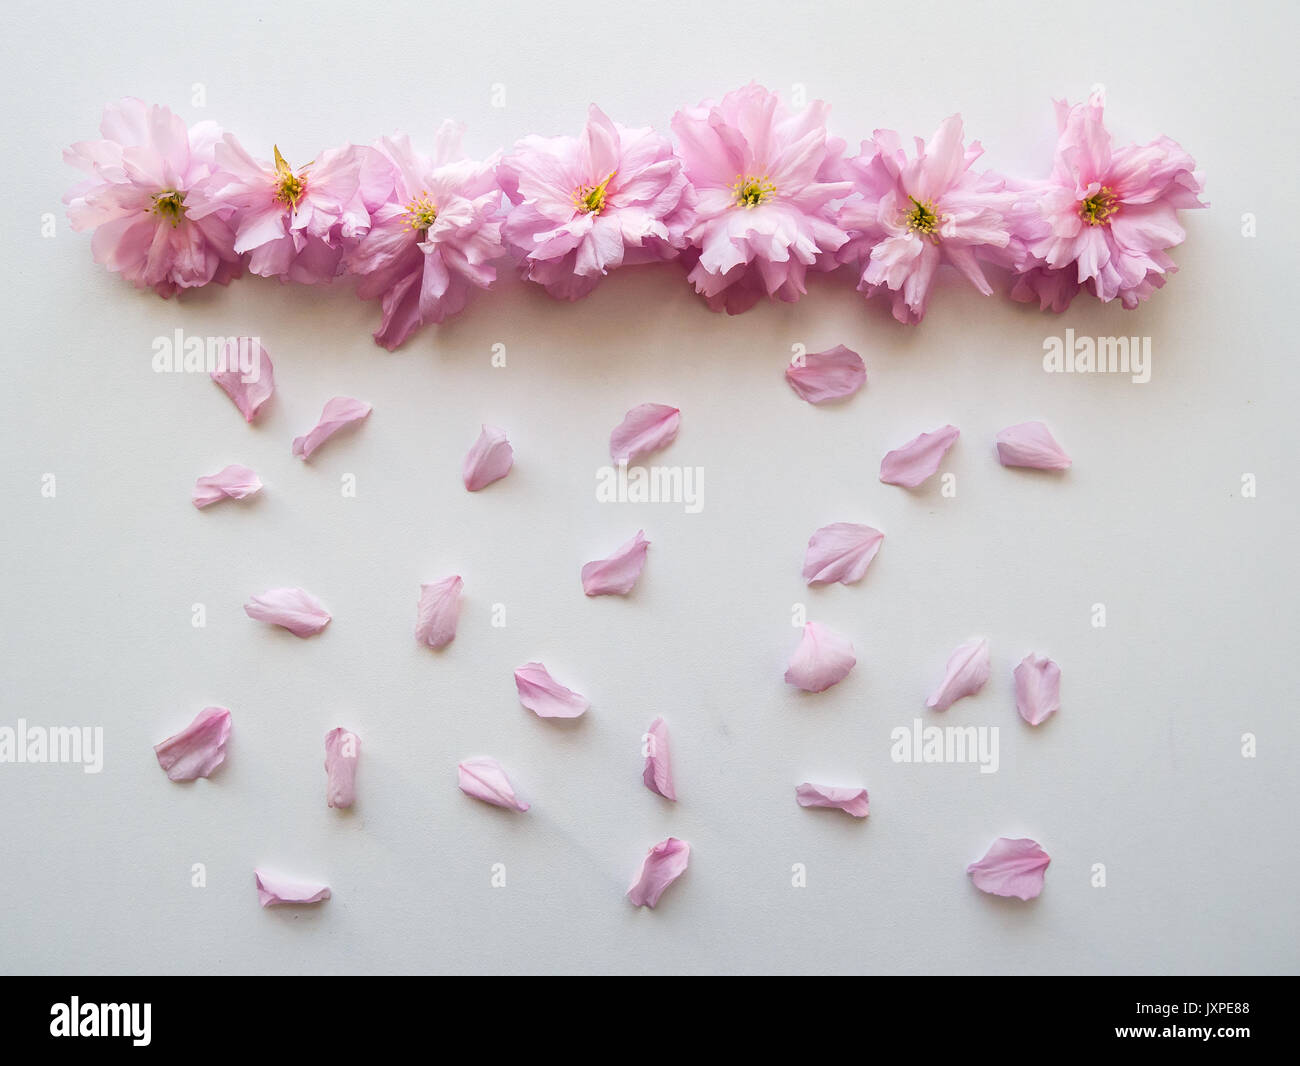 Fiori di colore rosa disposti in linea con petali simulando la pioggia su un tavolo bianco. Vista dall'alto. Formato orizzontale. Foto Stock